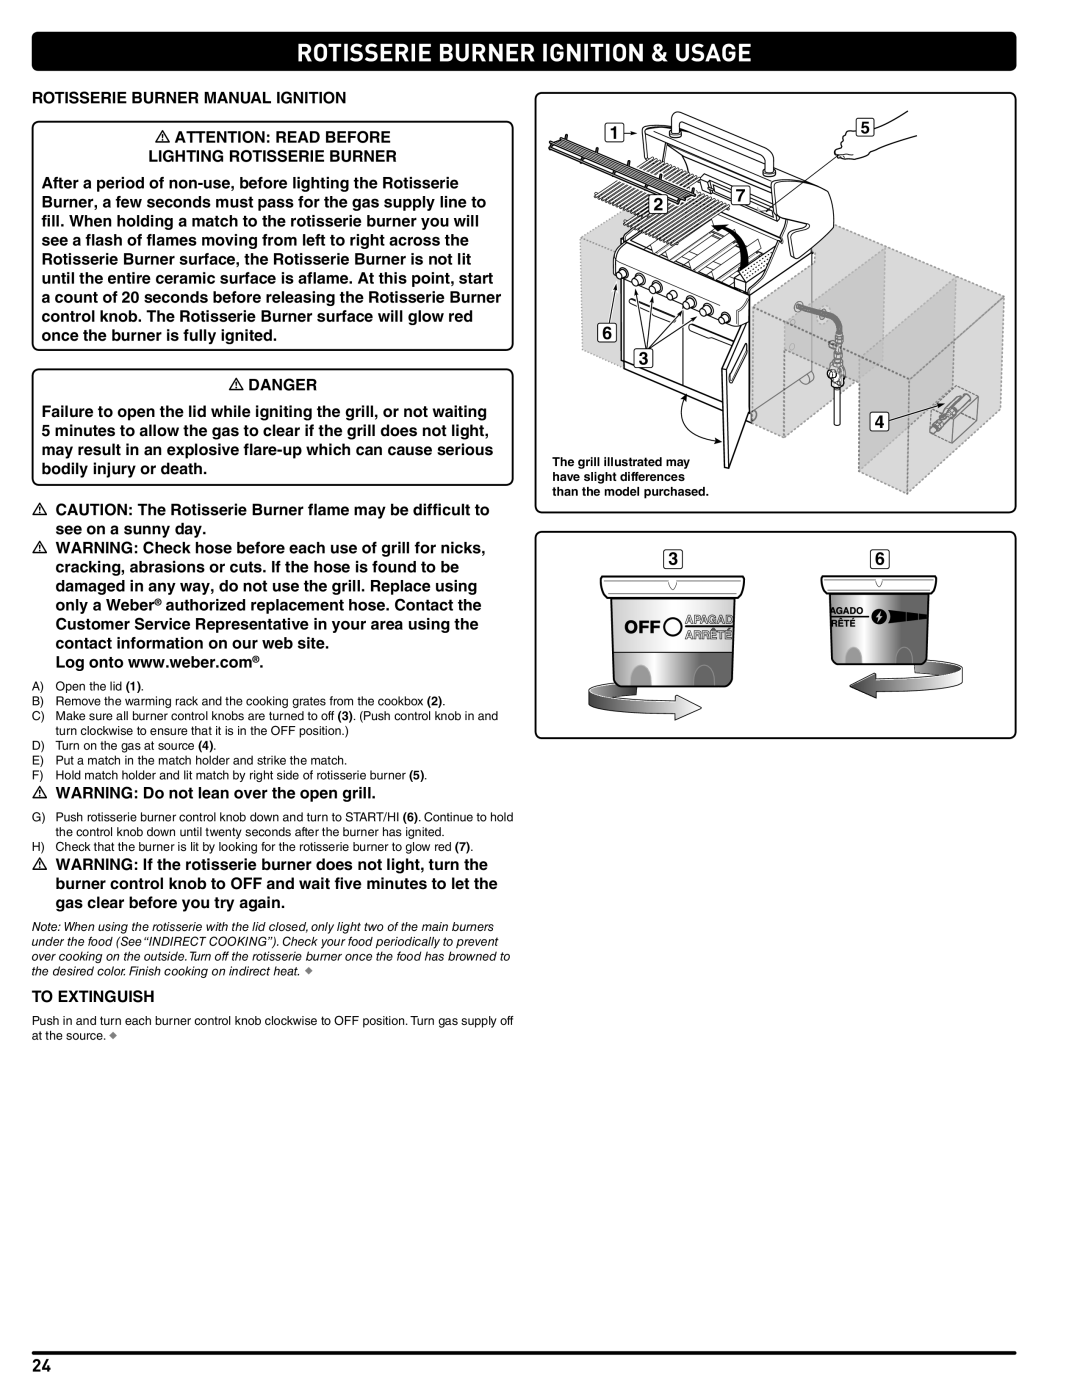 Weber 56576 manual Rotisserie Burner Ignition & Usage 